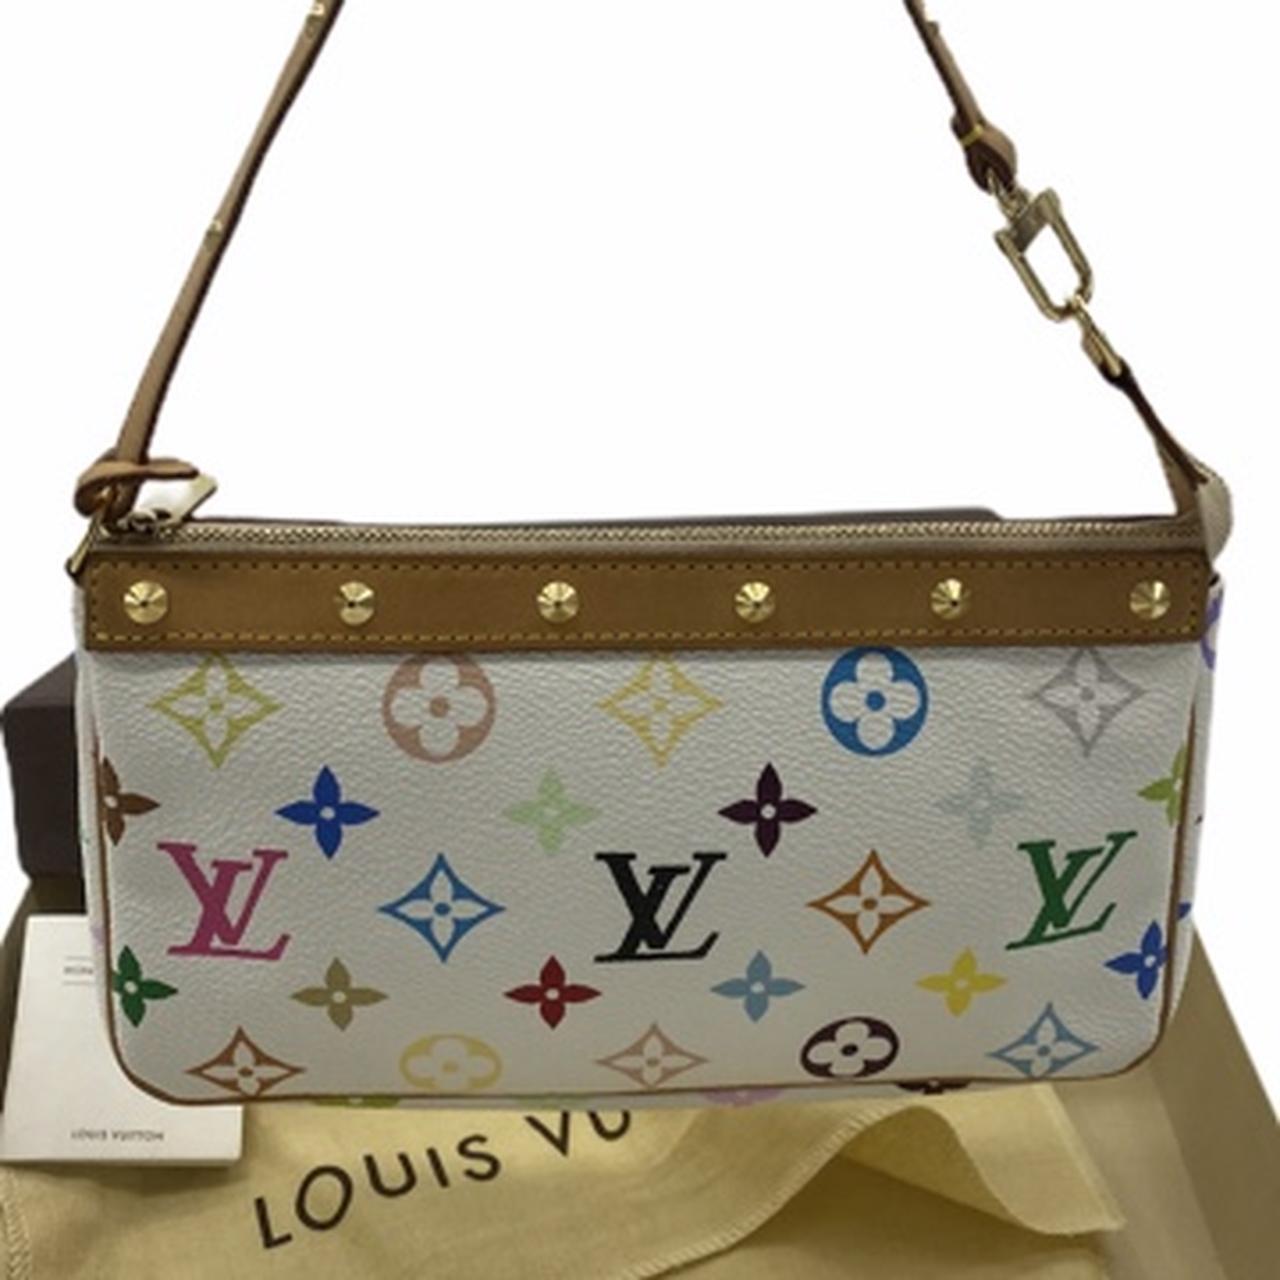 Vintage Louis Vuitton Pochette multicolor bag Tasche - Depop